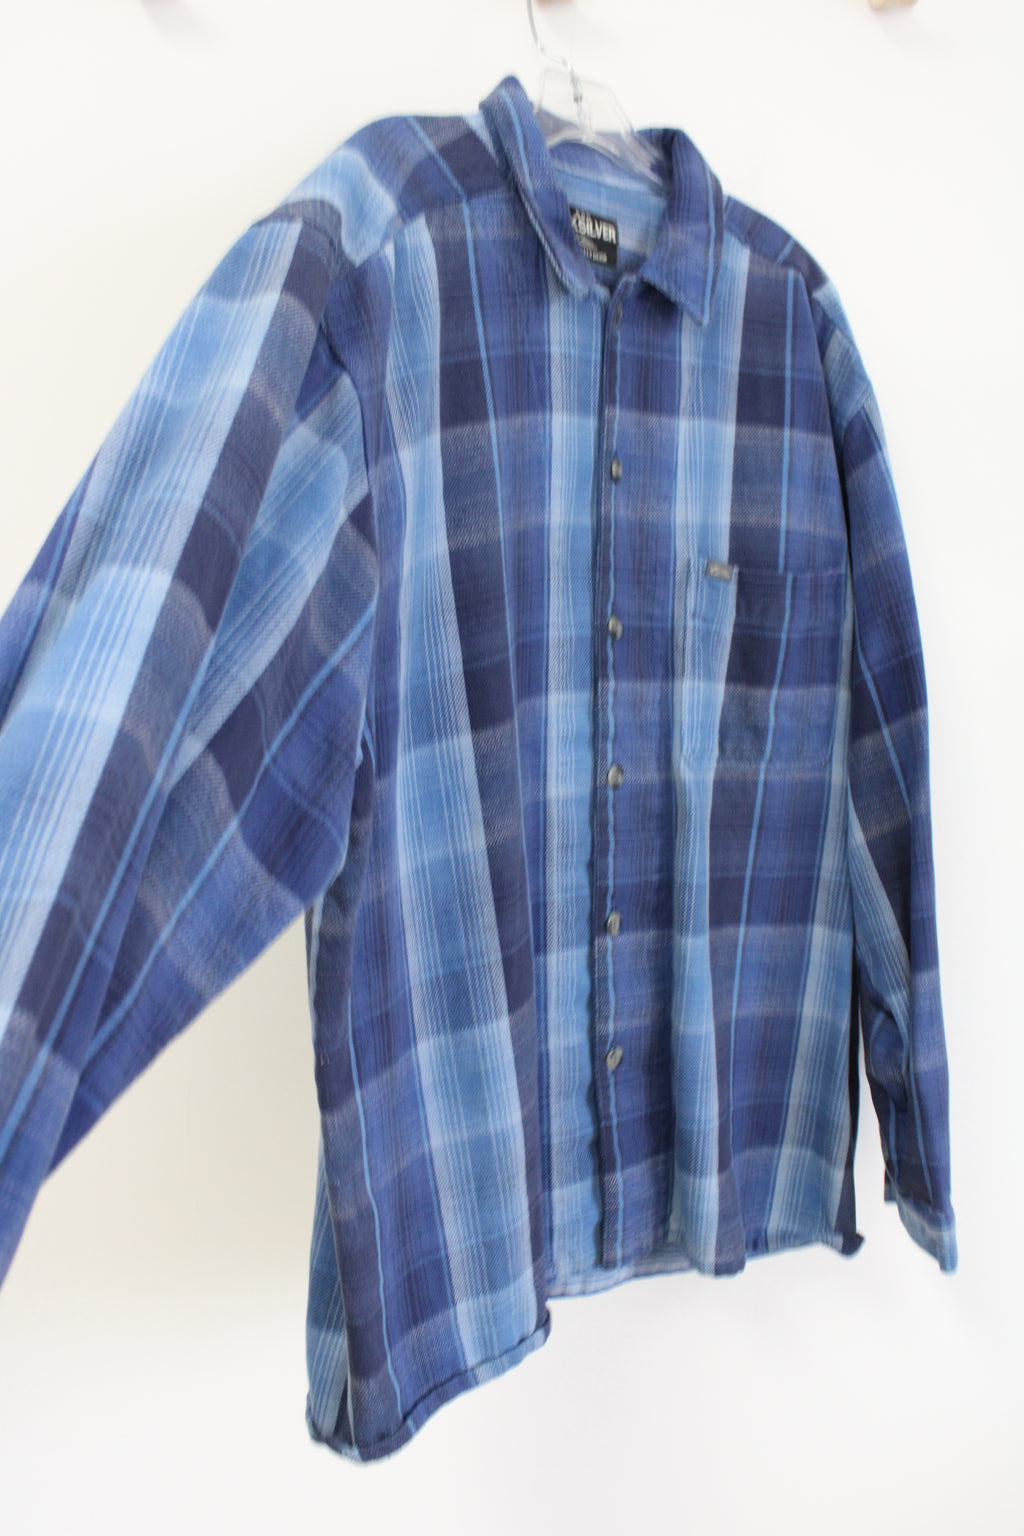 Quiksilver Salt Water Denim Blue Woven Shirt | L